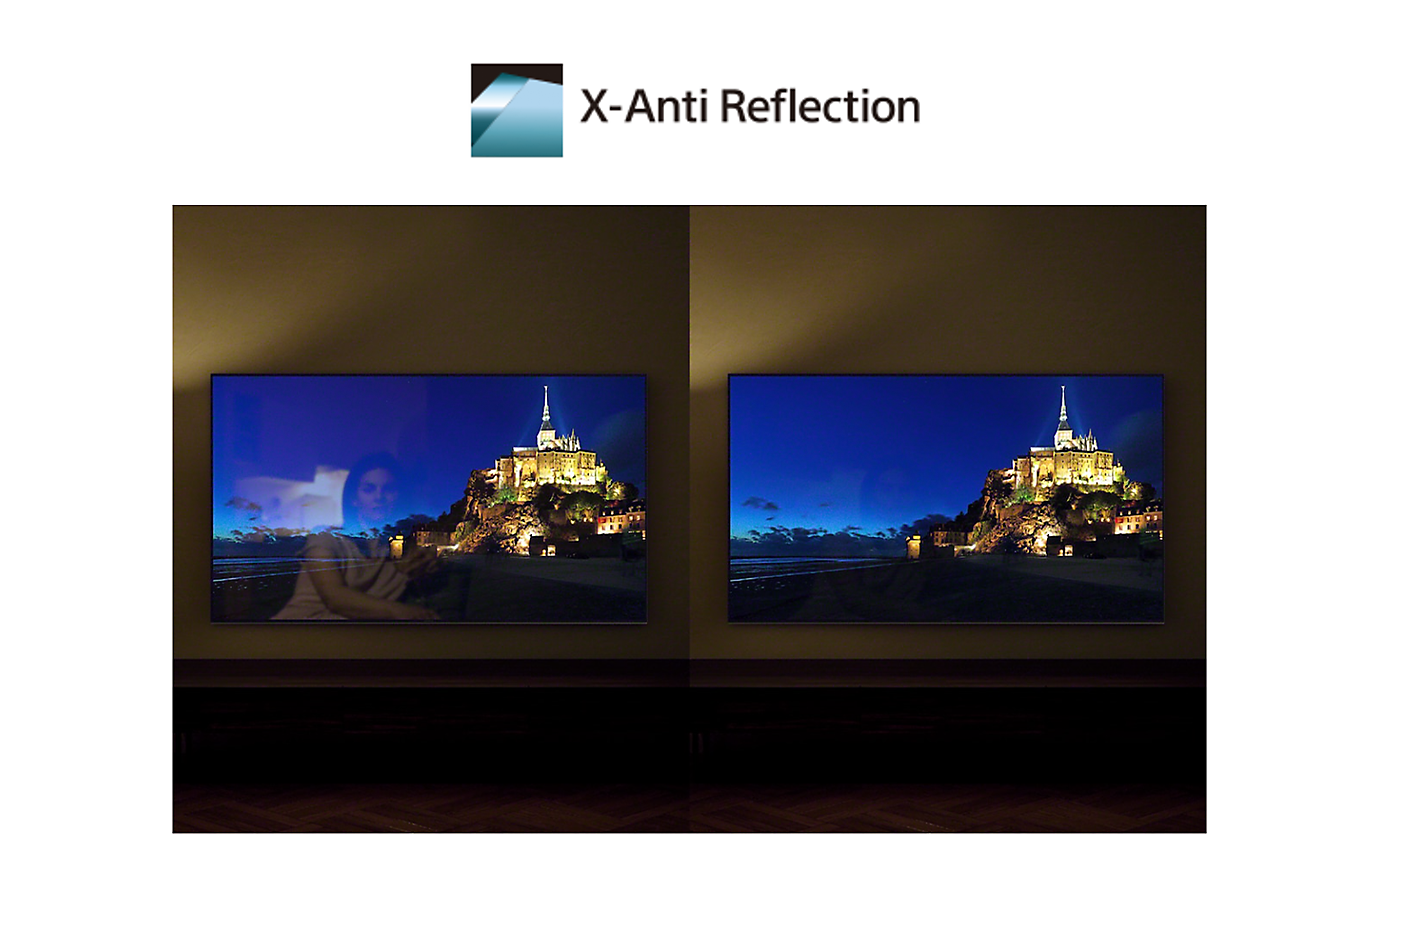 Comparaison d’écrans avec et sans X-Anti Reflection